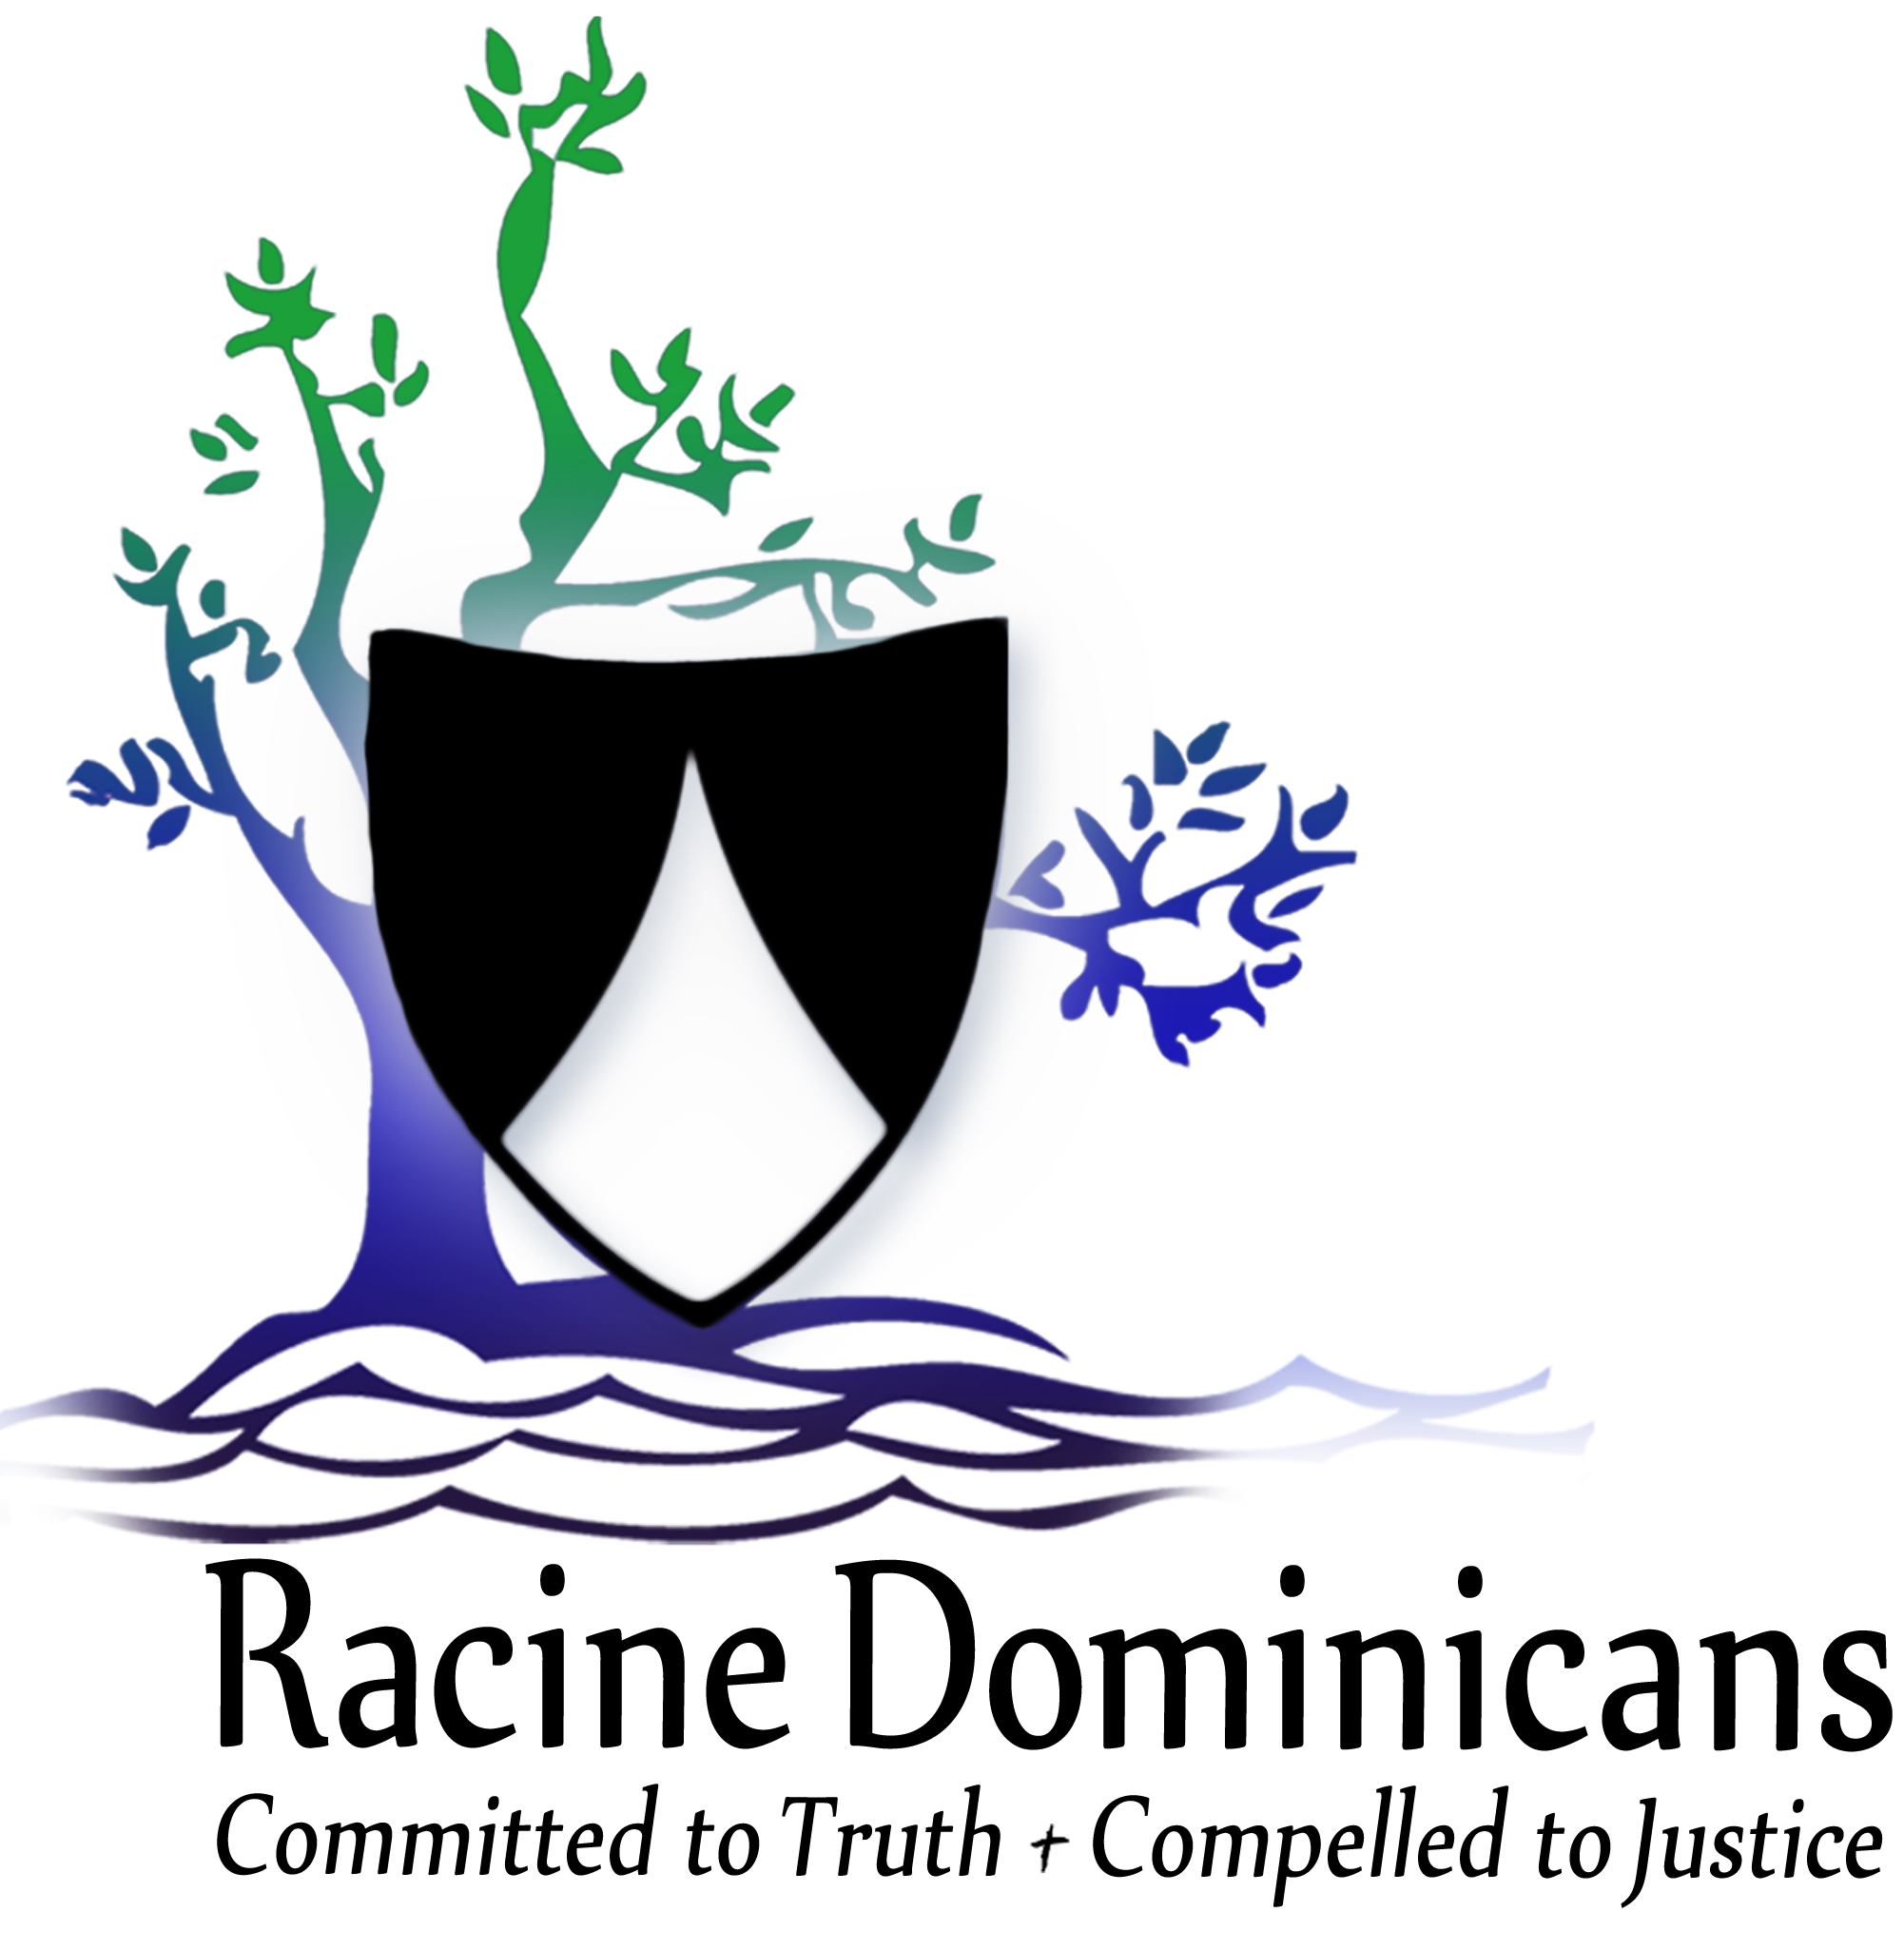 Racine Dominicans